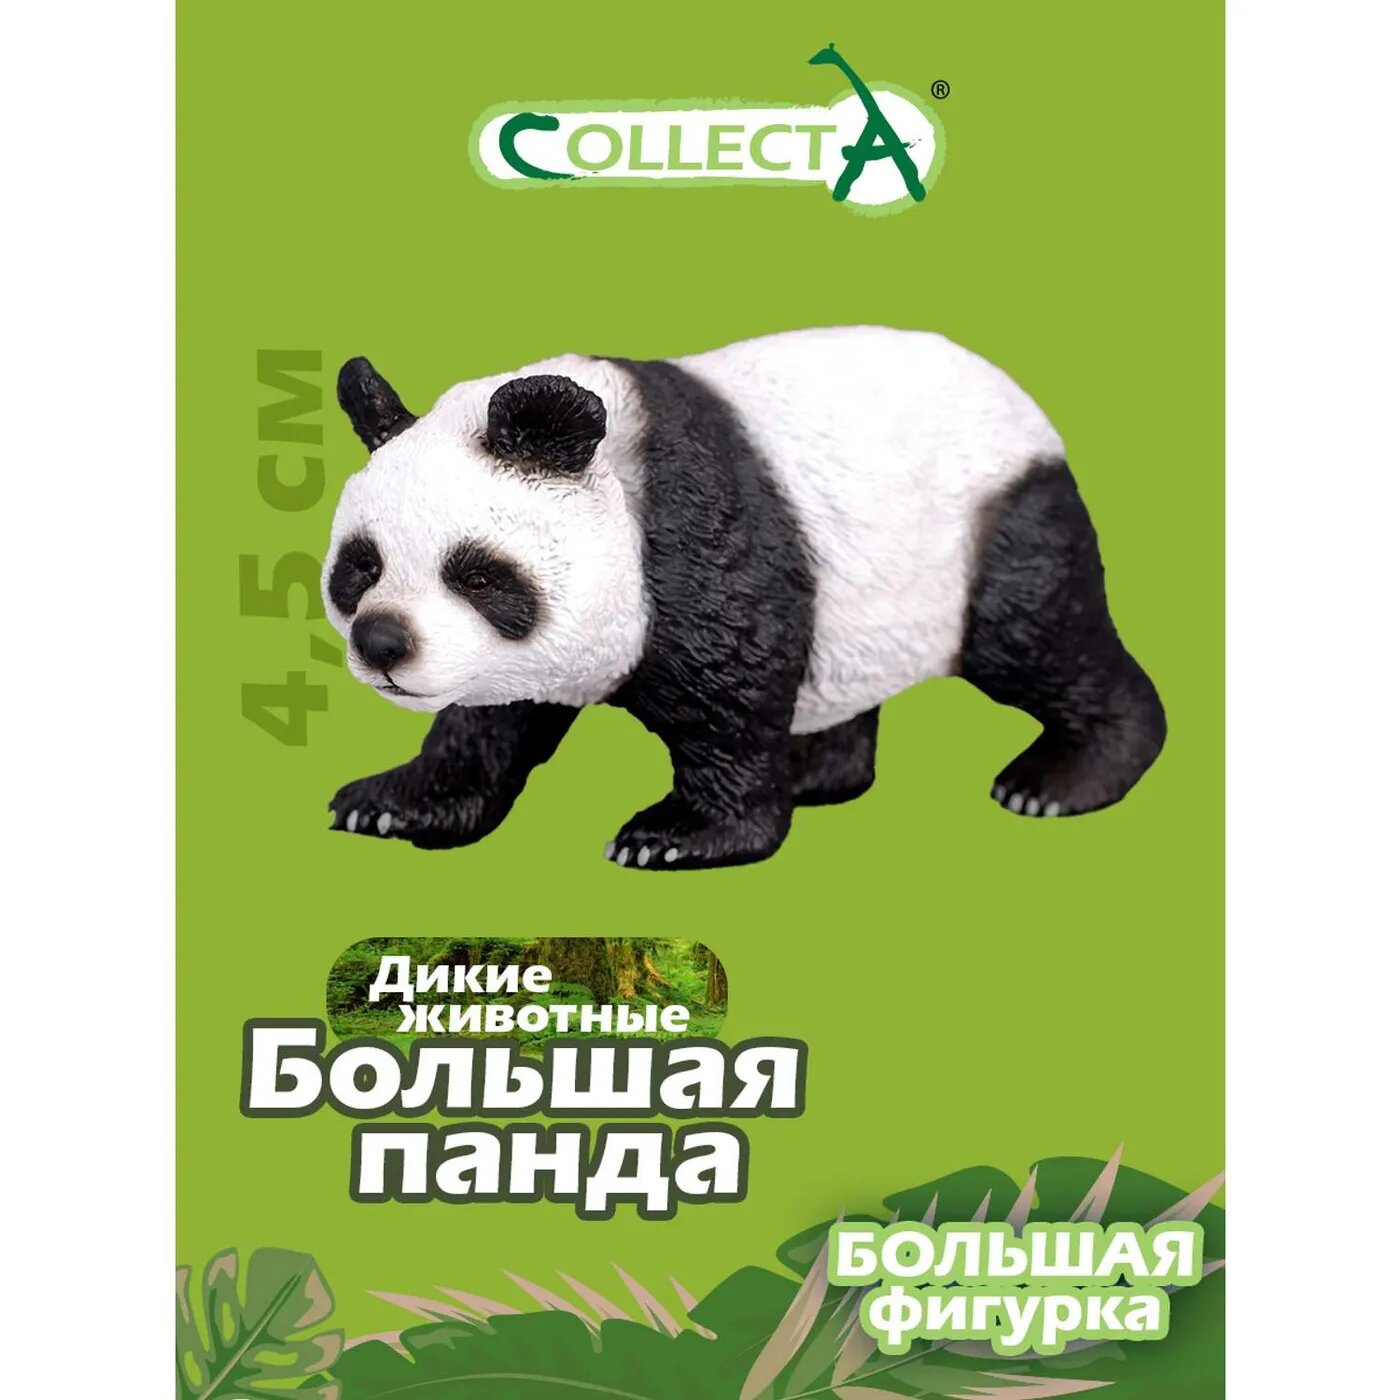 Игрушка Collecta Большая панда фигурка животного